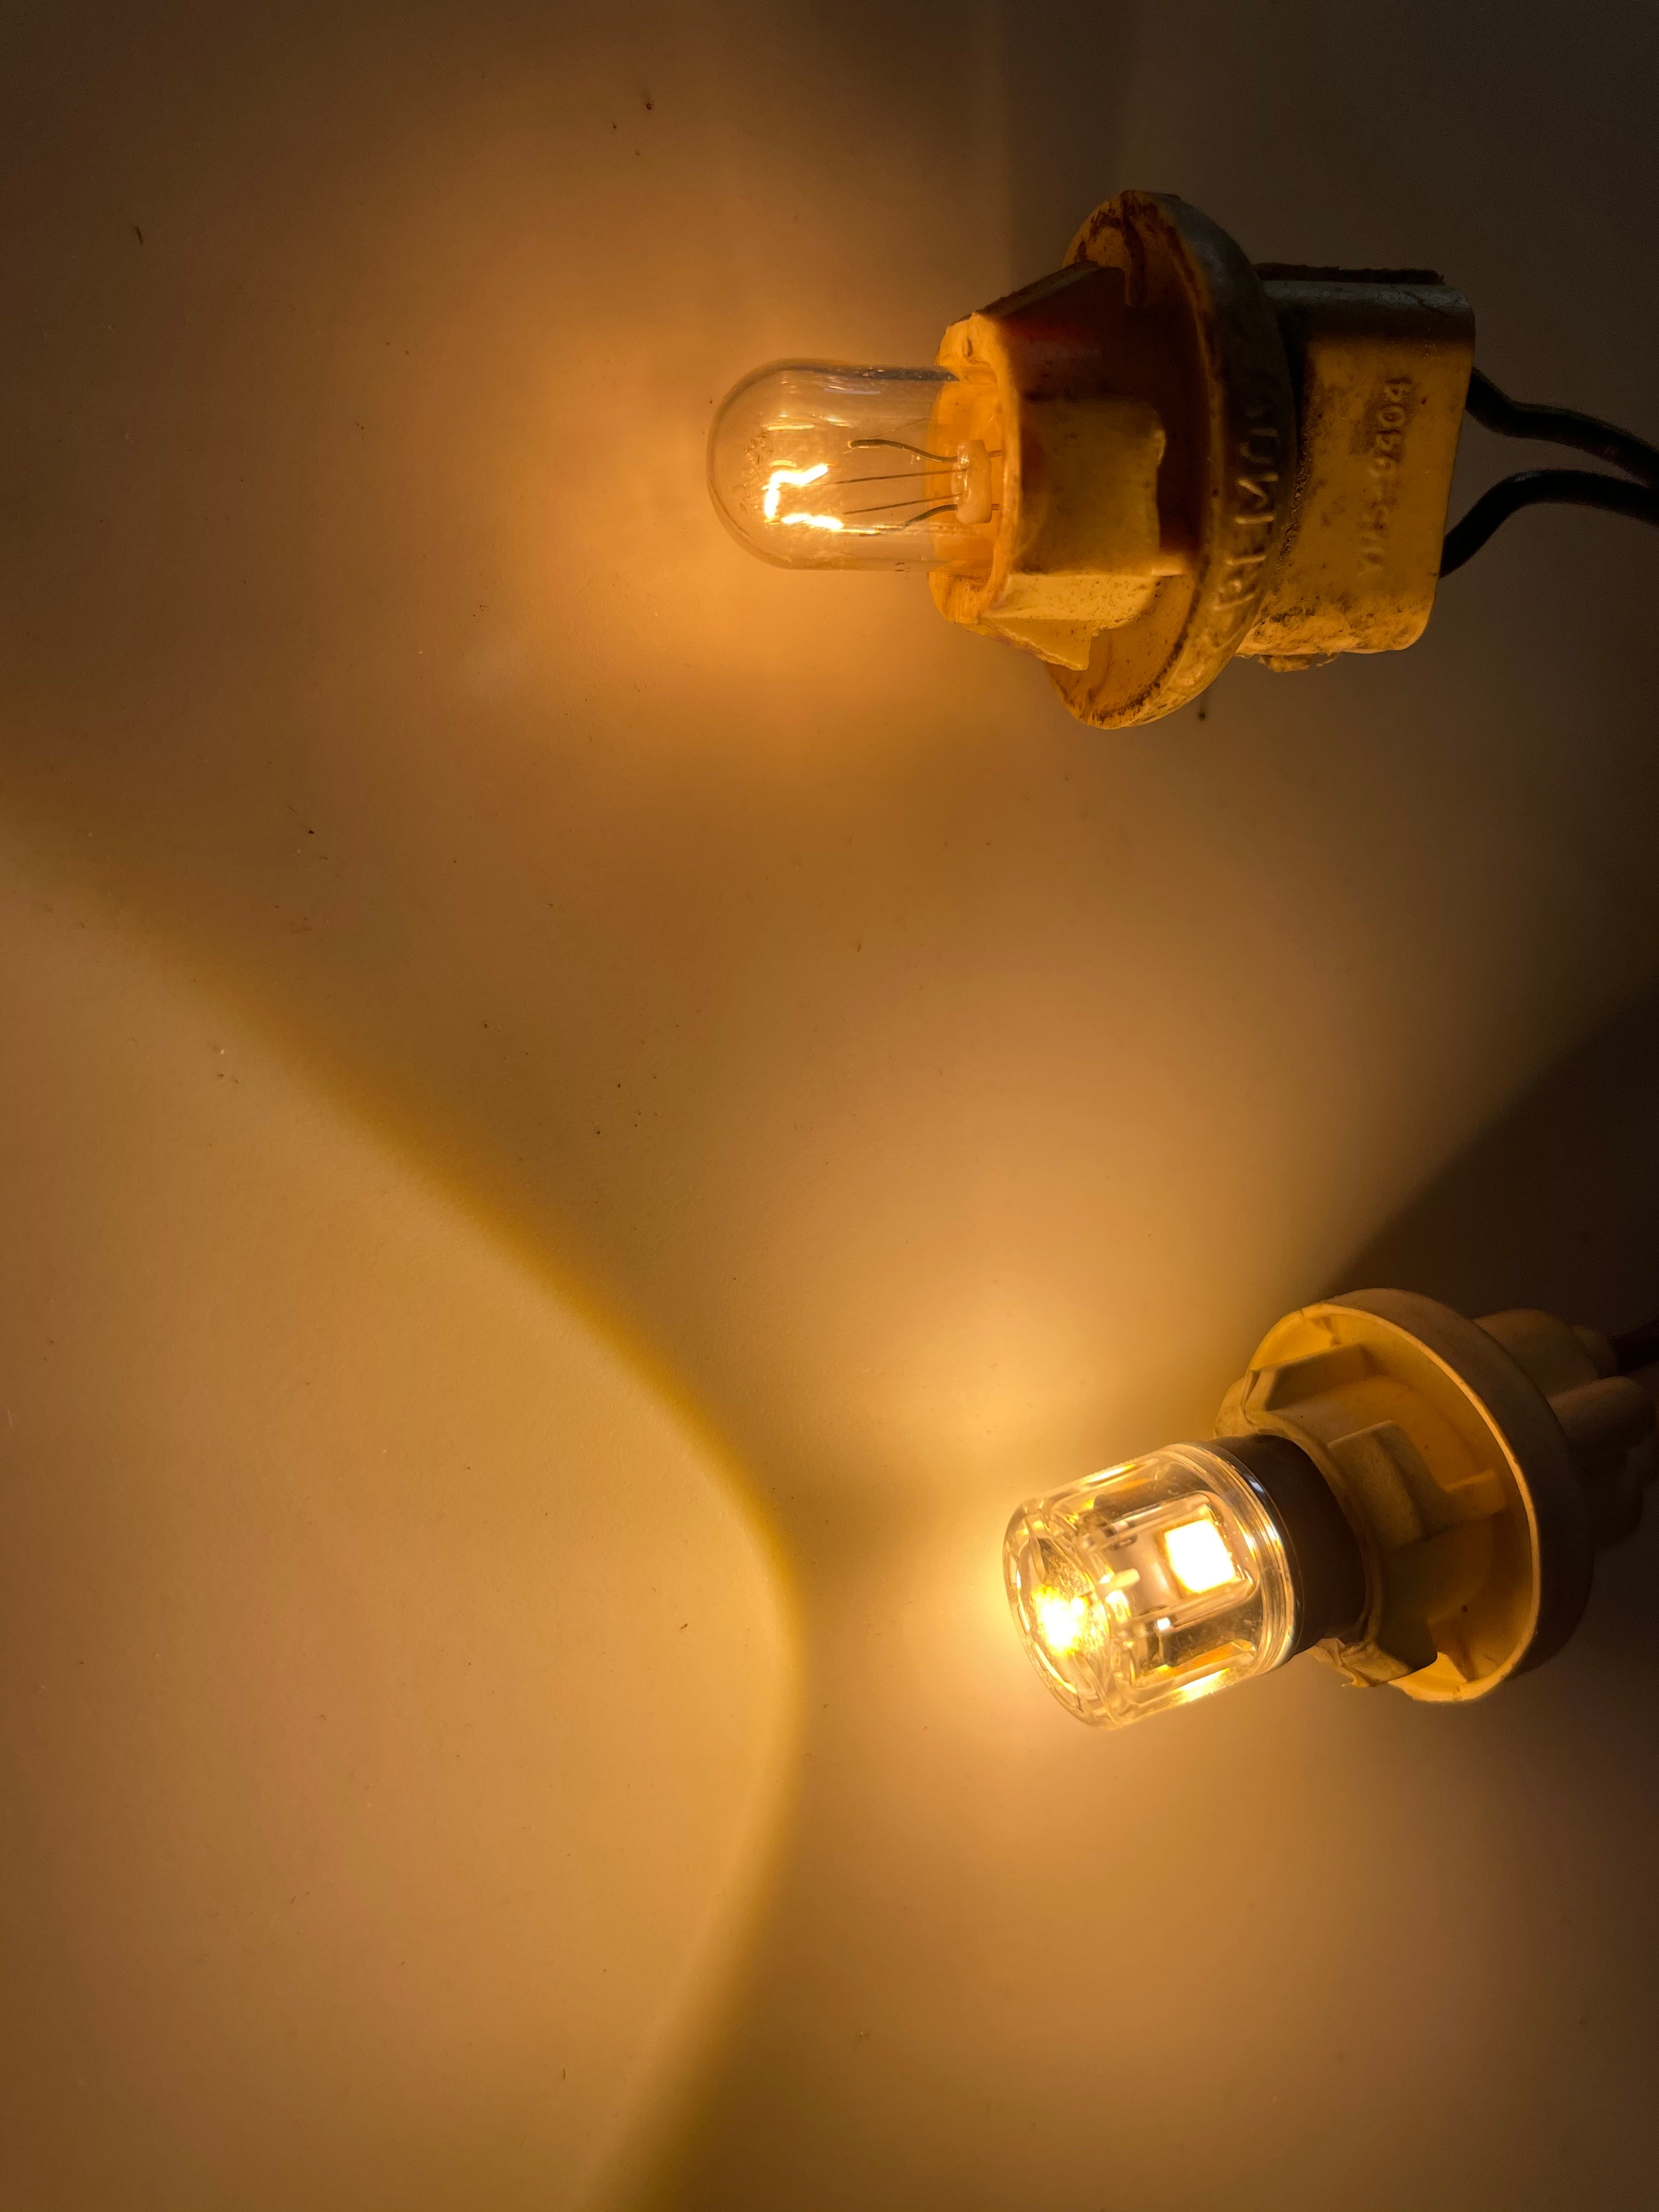 T10/ 194 2.0: Sparksmith LED Bulbs